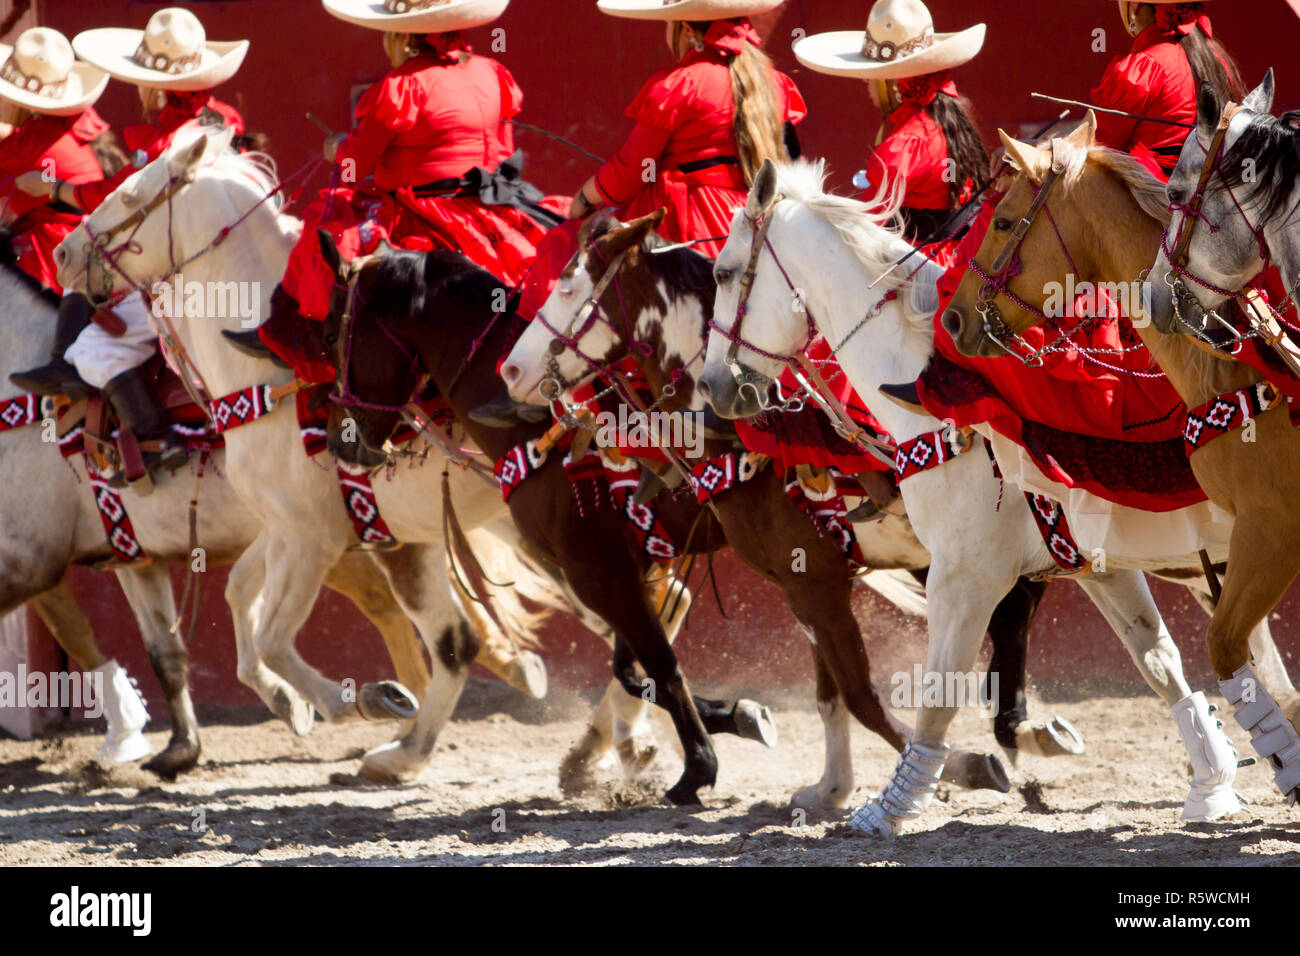 Gruppo di escaramuza messicano ragazze con rosso abiti messicano e sombrero cavalcata cavallo su un rodeo Foto Stock